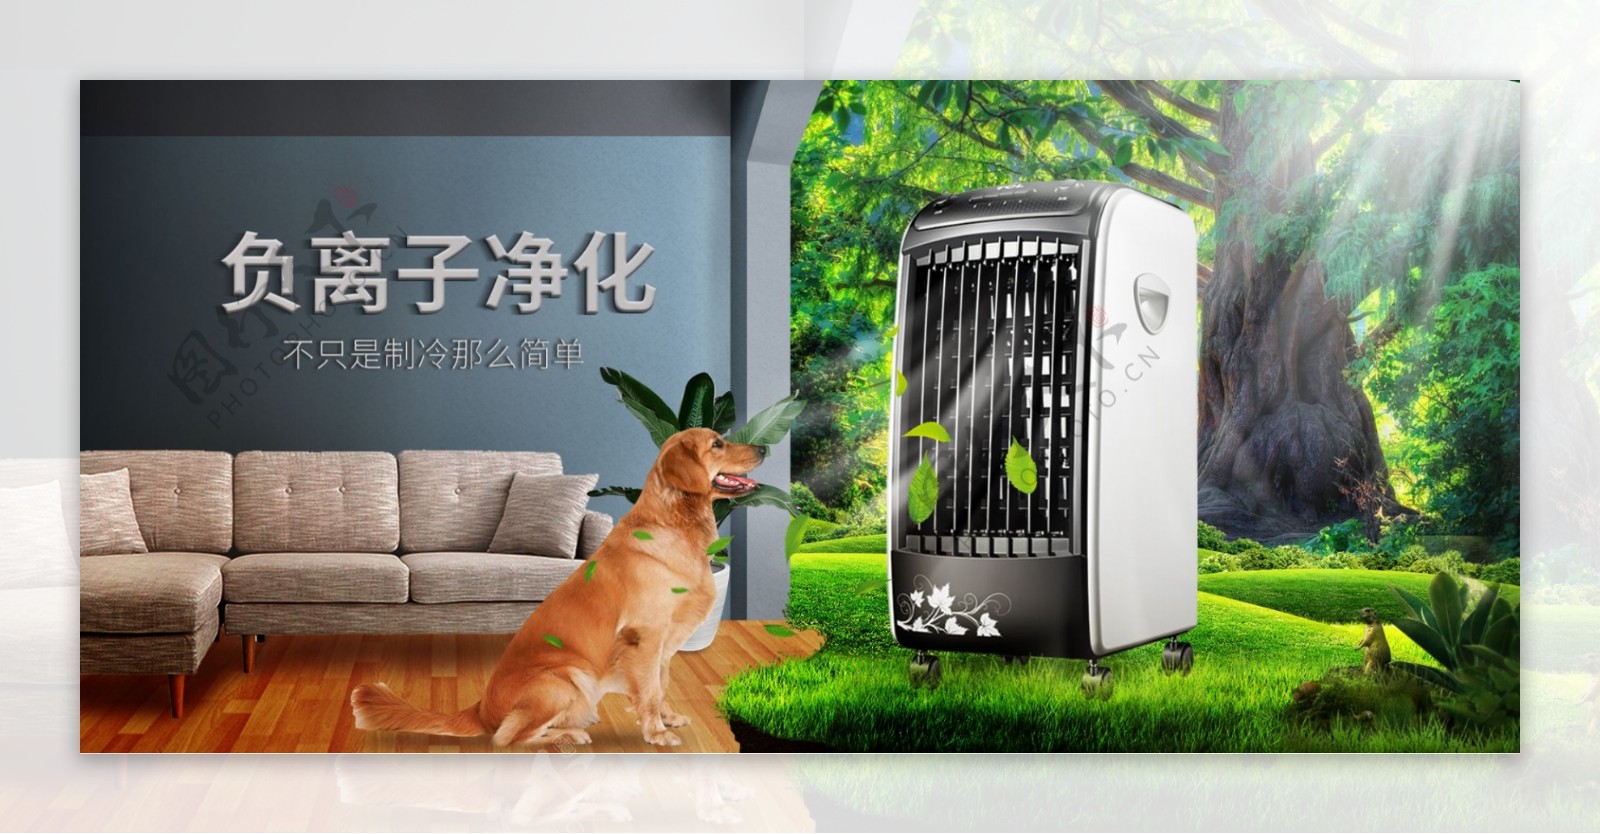 夏季空调扇促销合成海报